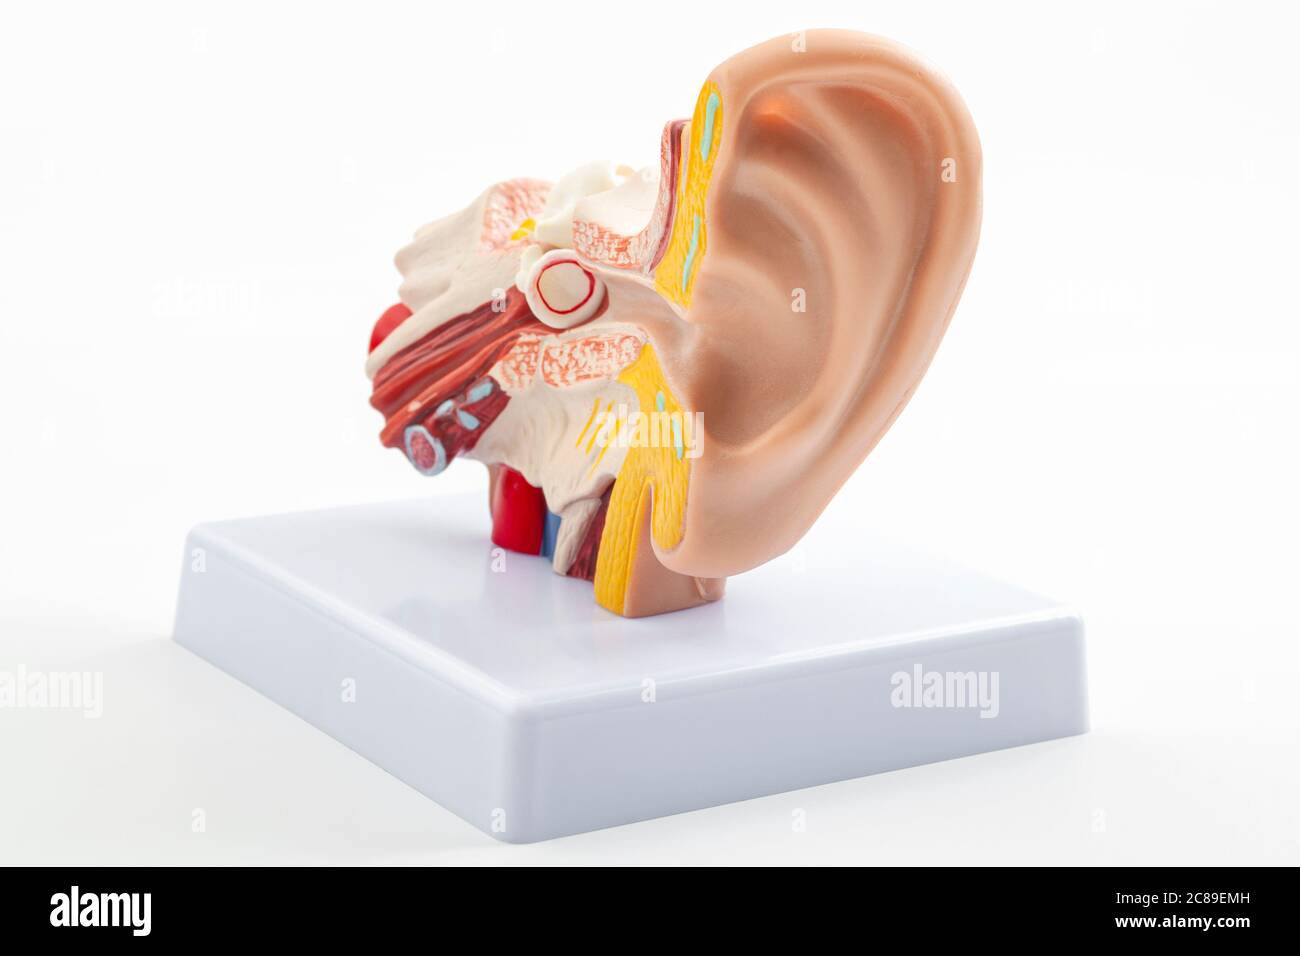 ORL ou otolaryngologie, équipement de laboratoire et concept de santé d'organe auditif avec modèle anatomique d'oreille isolé sur fond blanc avec coupure Banque D'Images